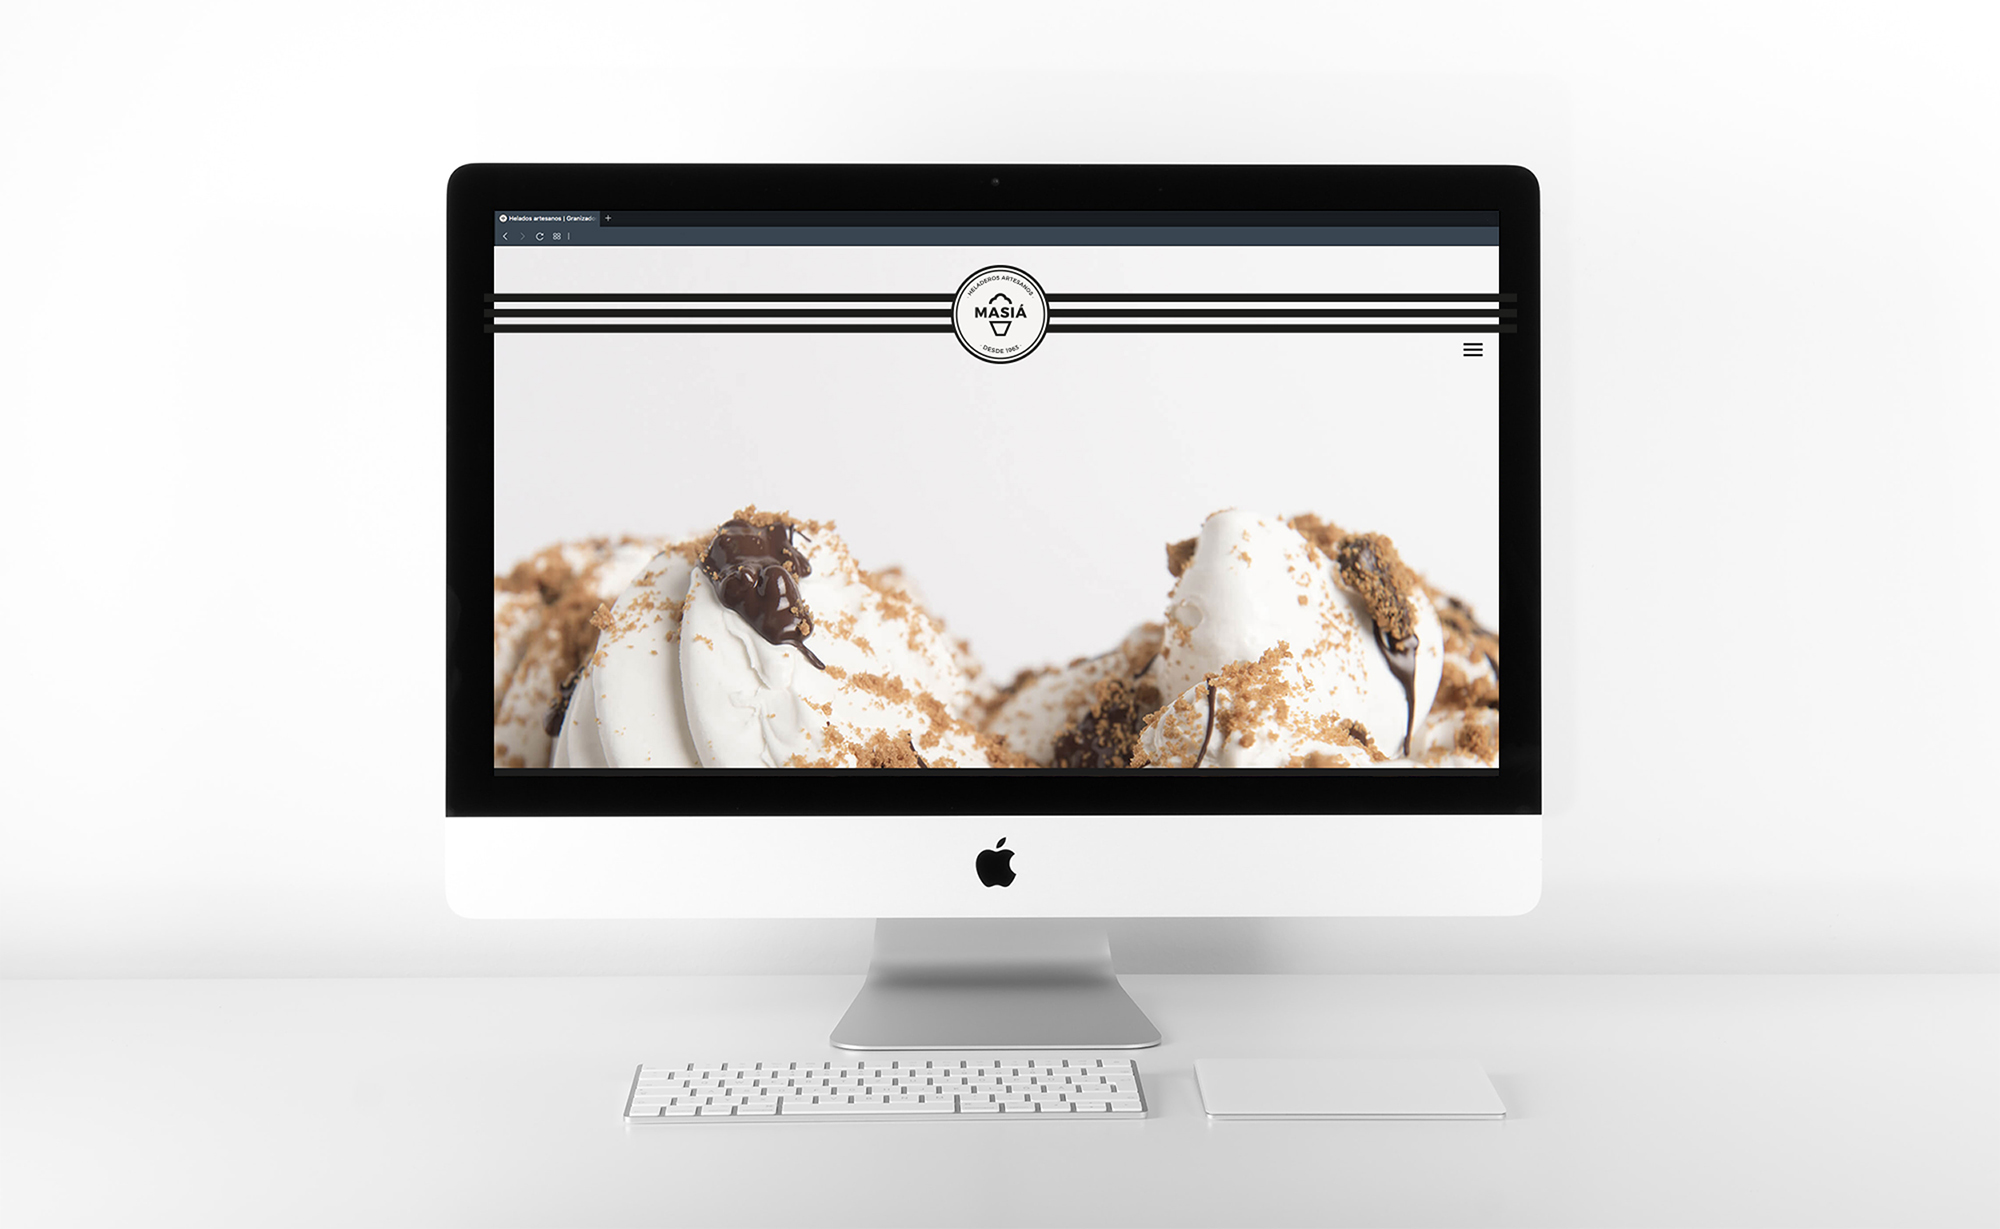 Diseño y desarrollo de website corporativo para Masiá Heladeros Artesanos. Detalle homepage sobremesa.